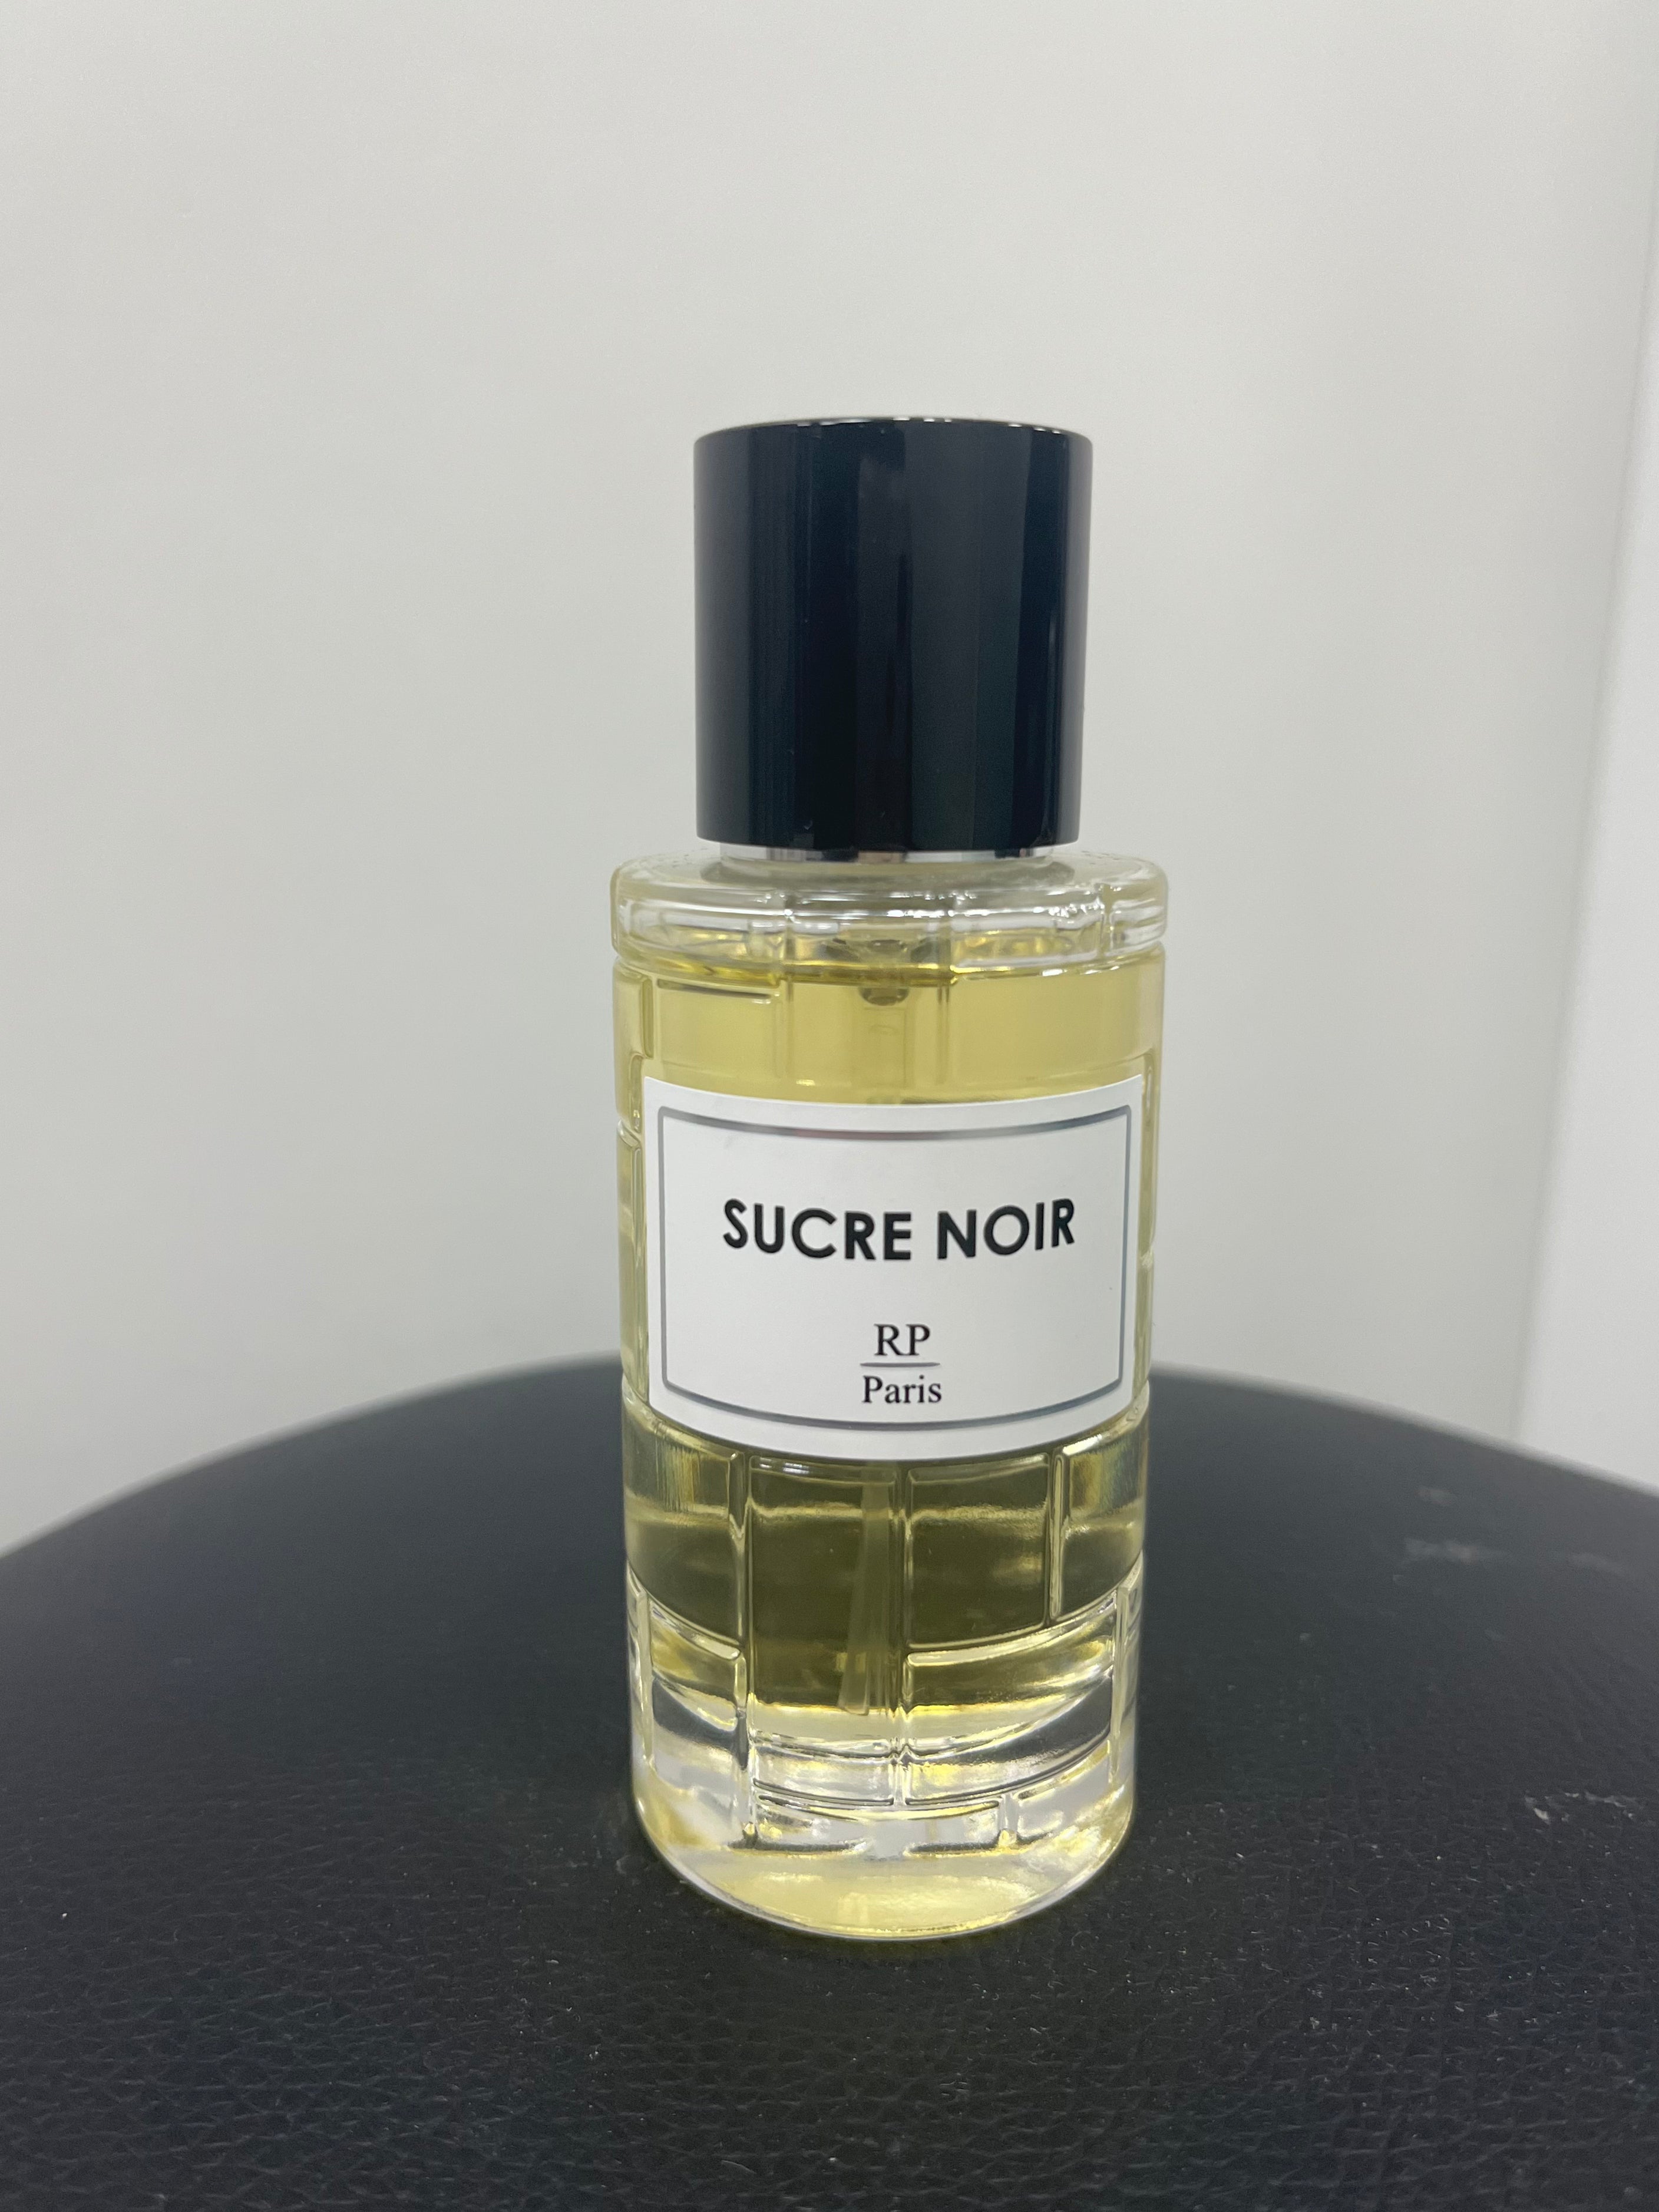 RP Paris - Parfum Sucre Noir - Stayin